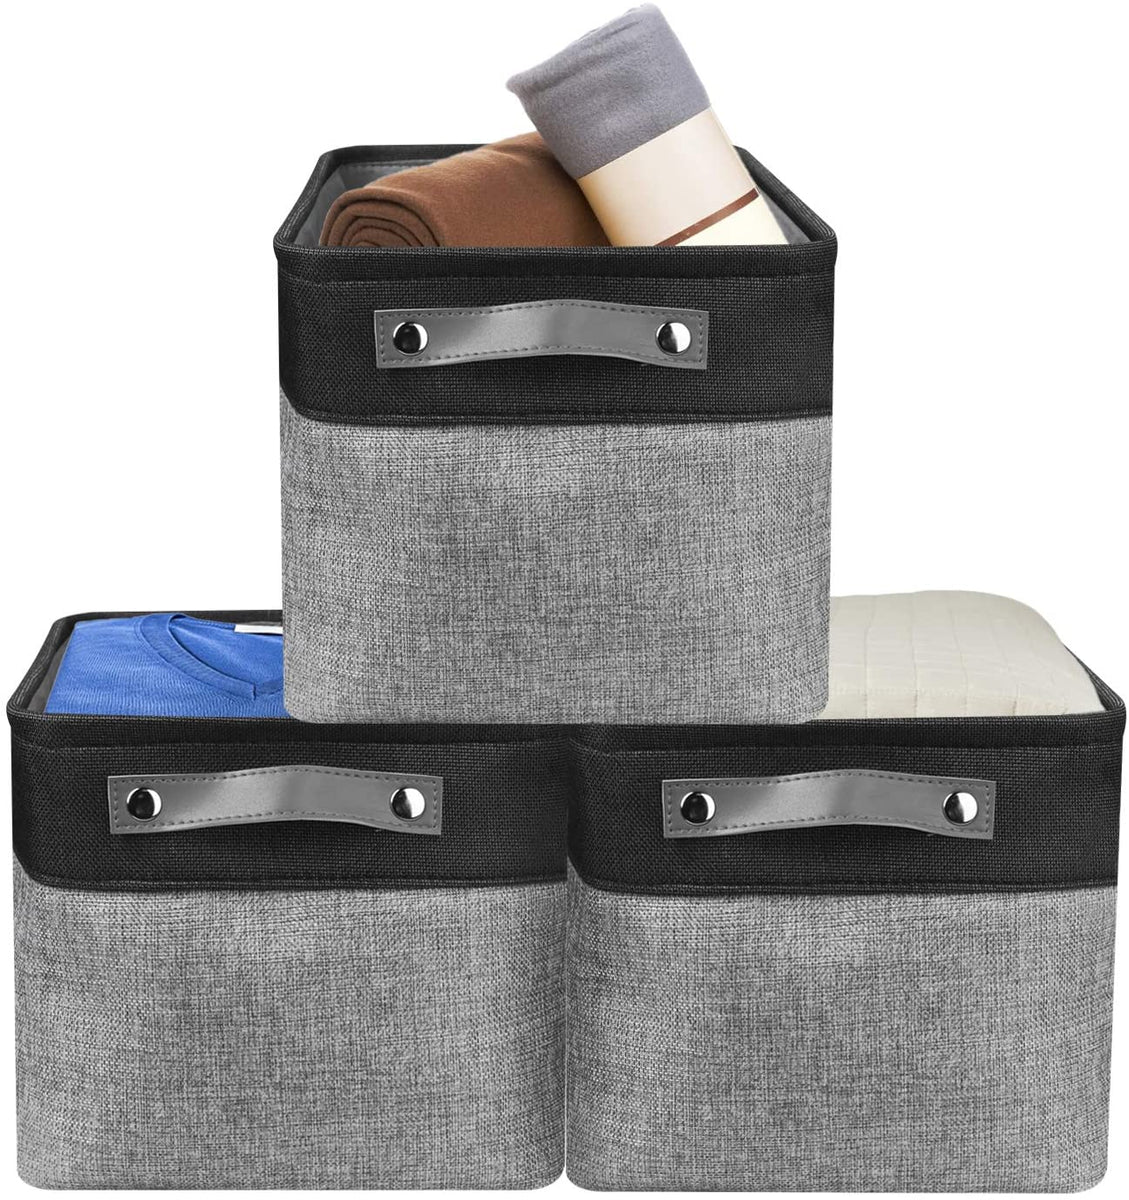 Awekris Large Storage Basket Bin Set [3-Pack] (Grey) (Black and White)